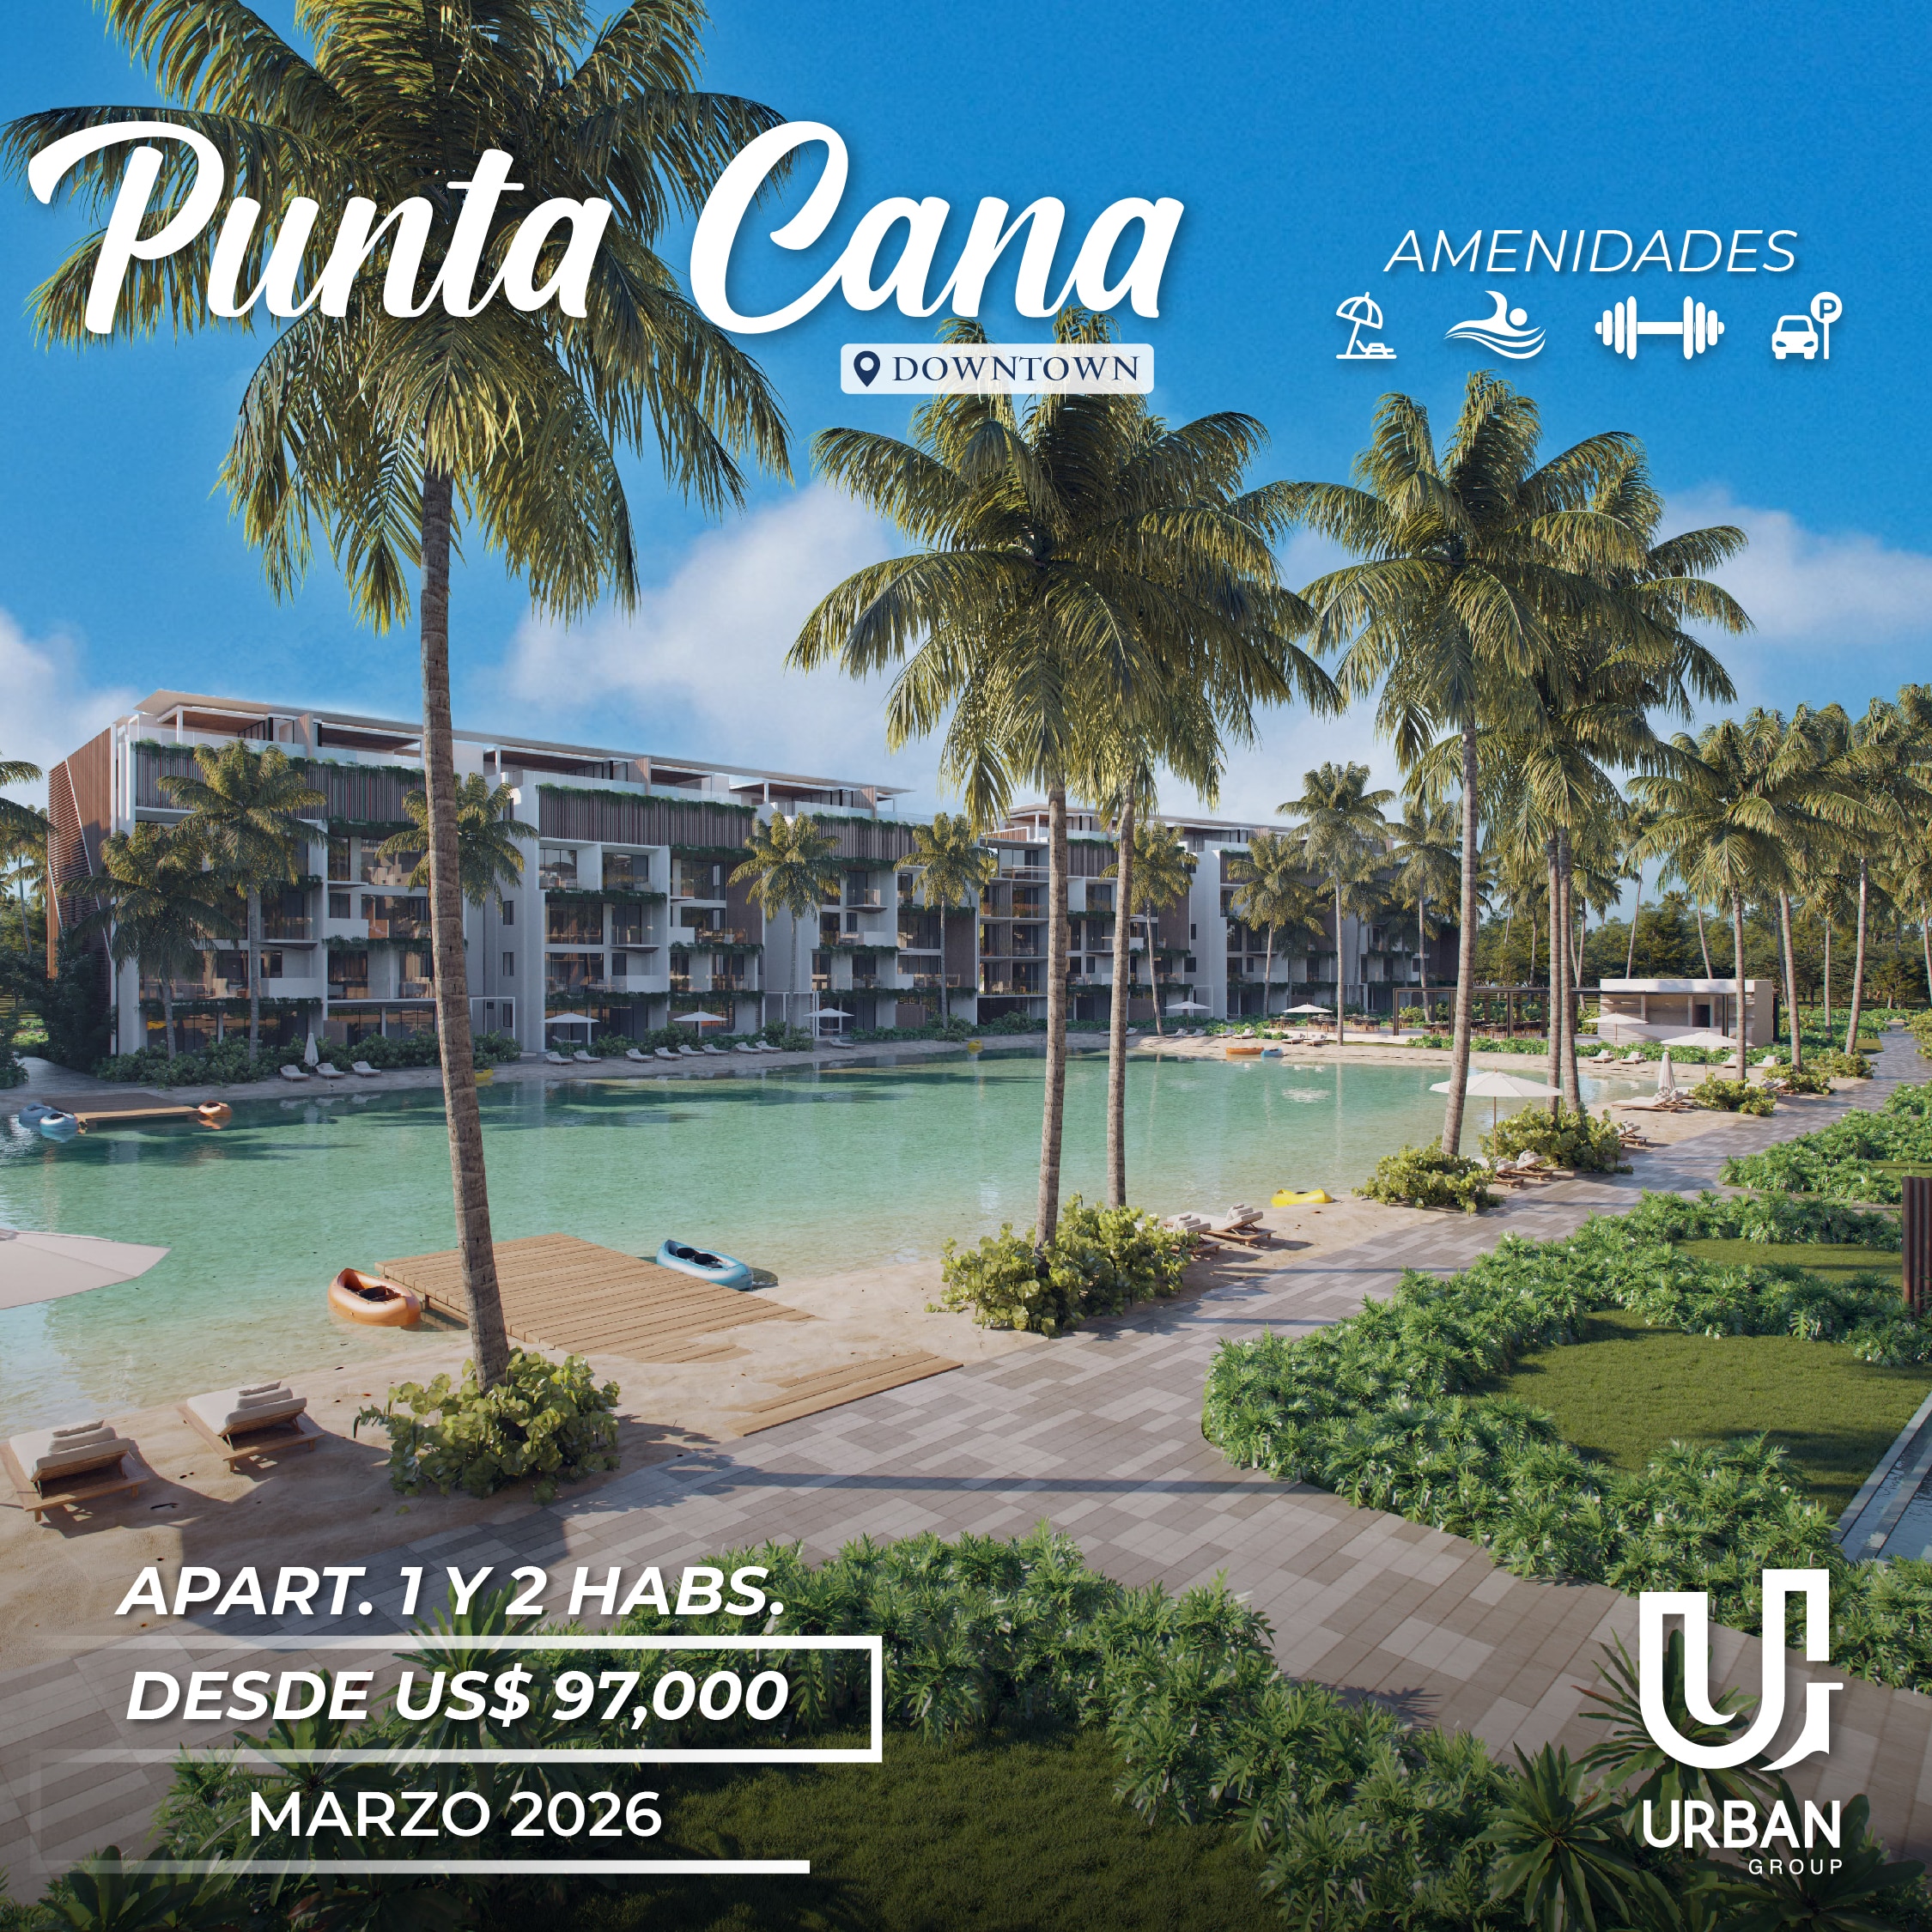 Apartamentos de 1 & 2 Habitaciones desde US$97,000 en Punta Cana